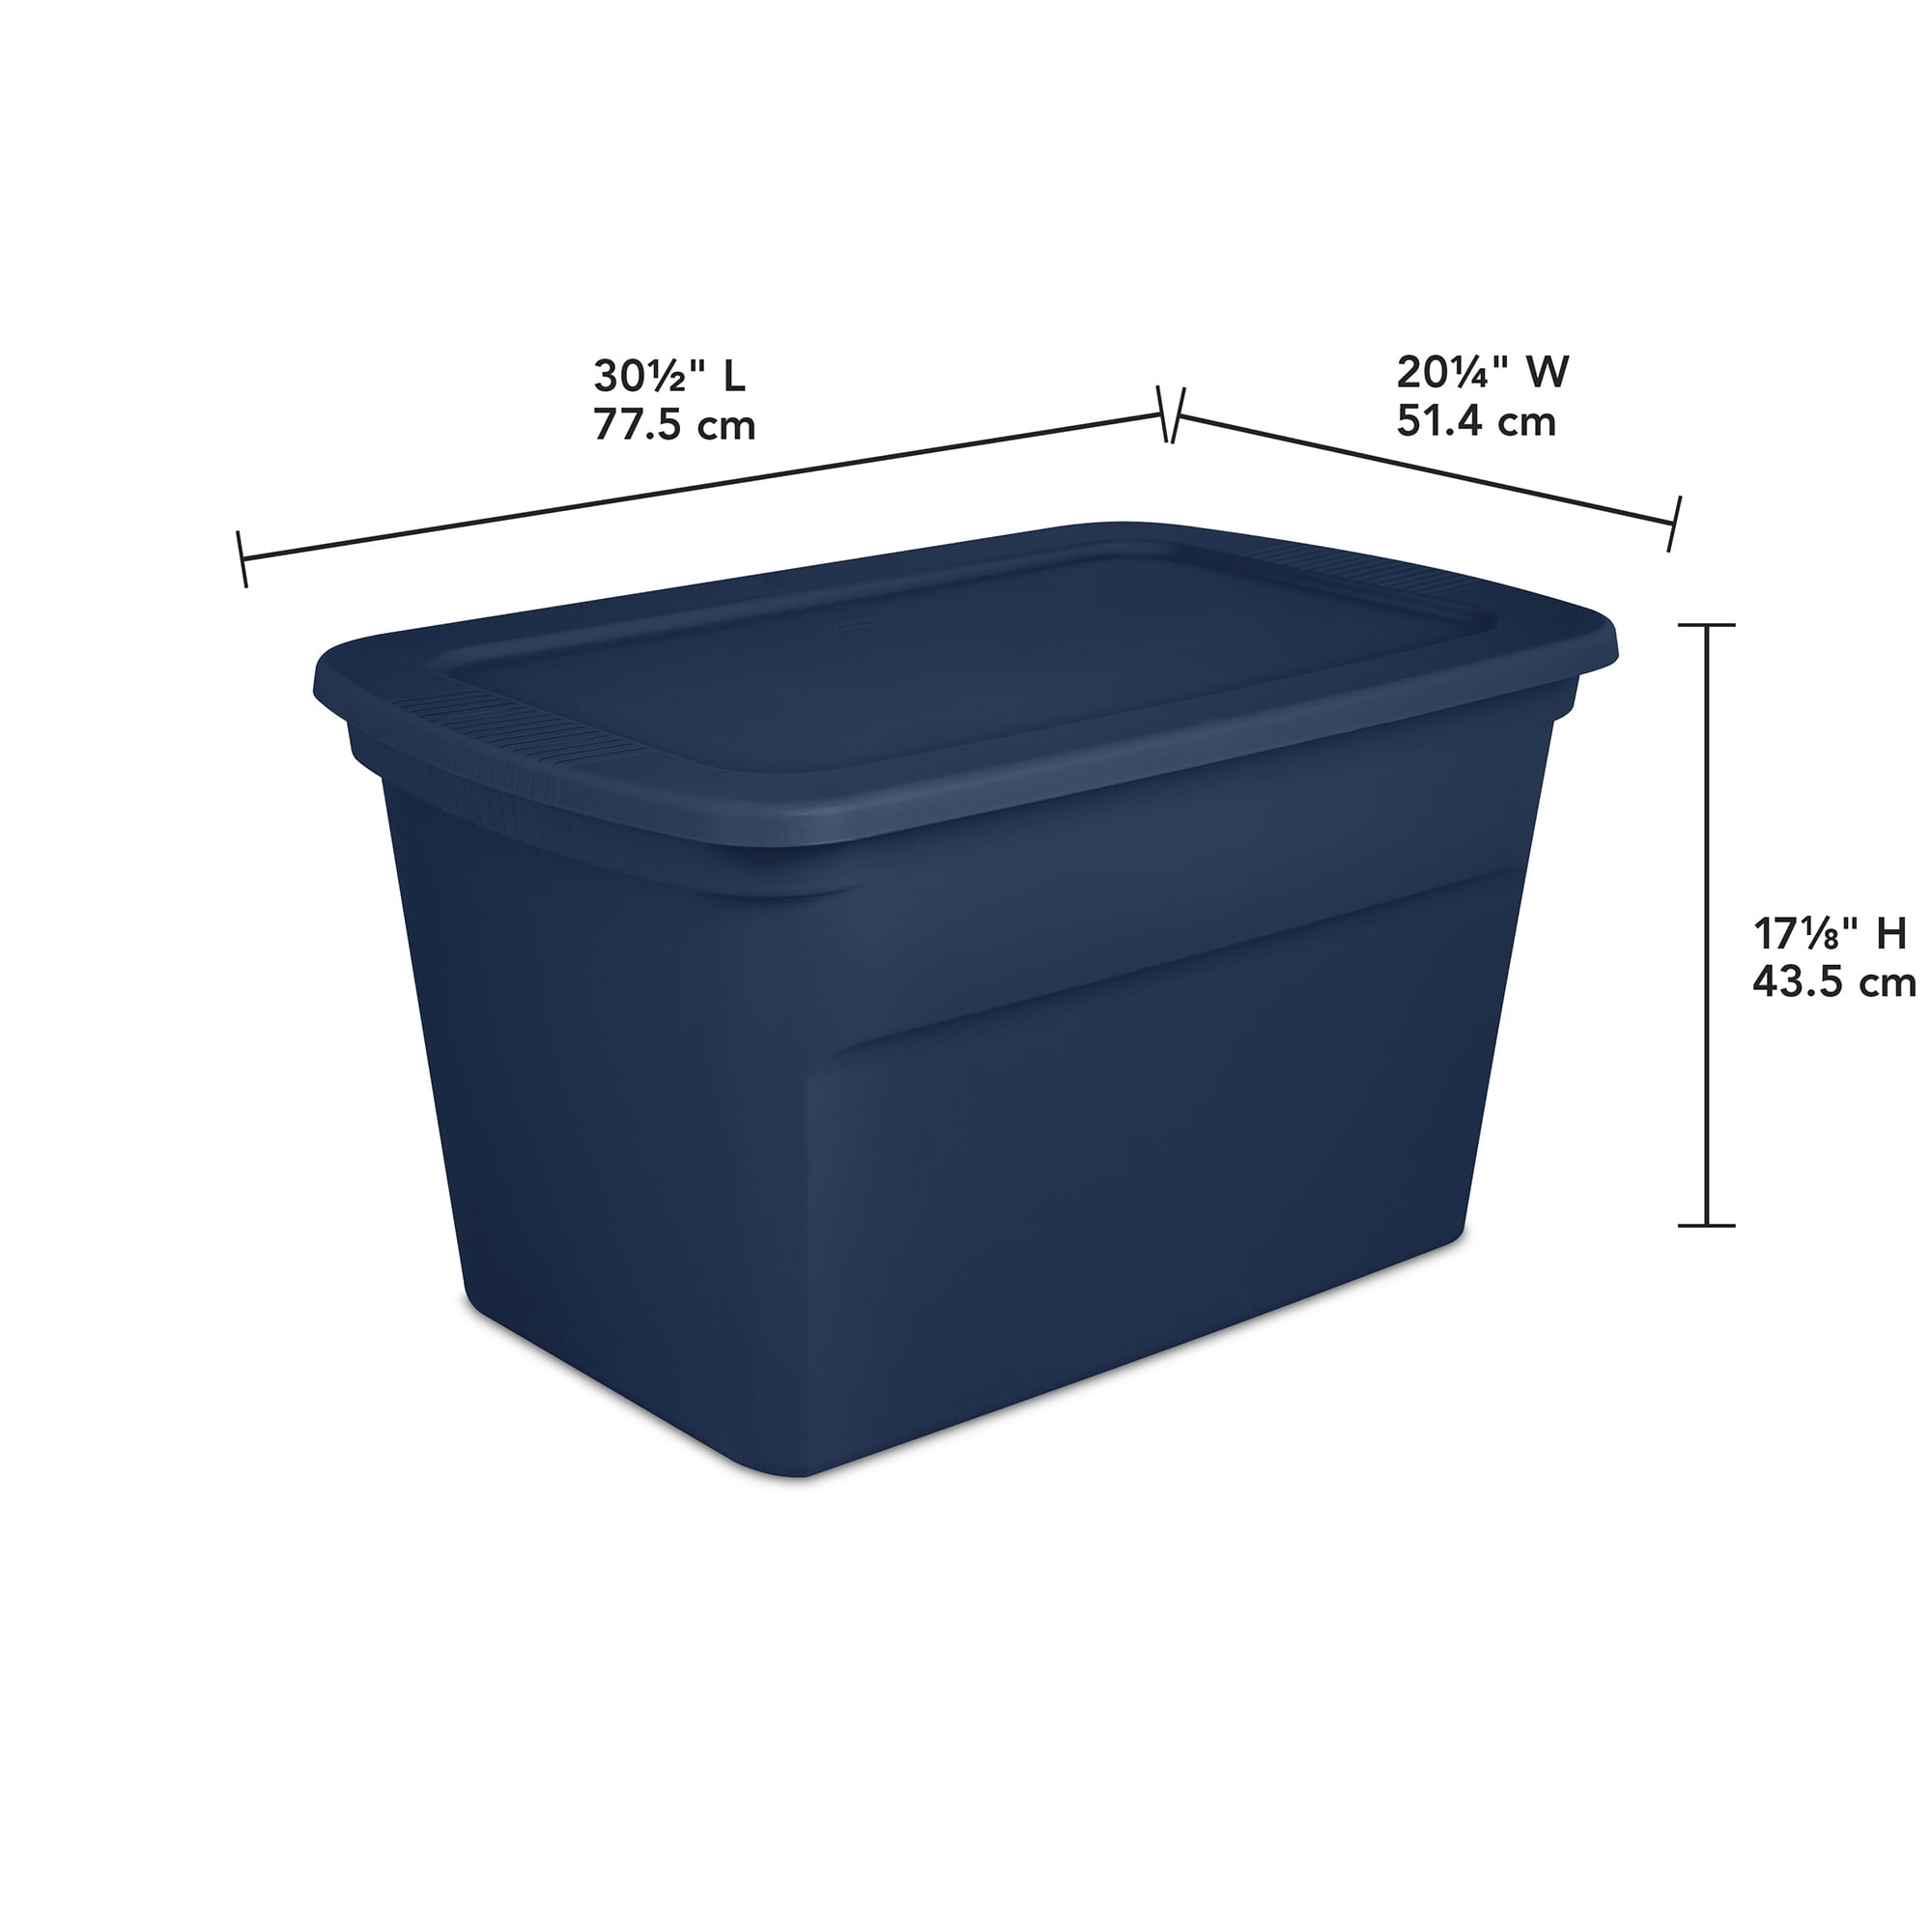 Sterilite 18336A03 30 Gallon Plastic Storage Container Box, Grey/Blue (3 Pack)